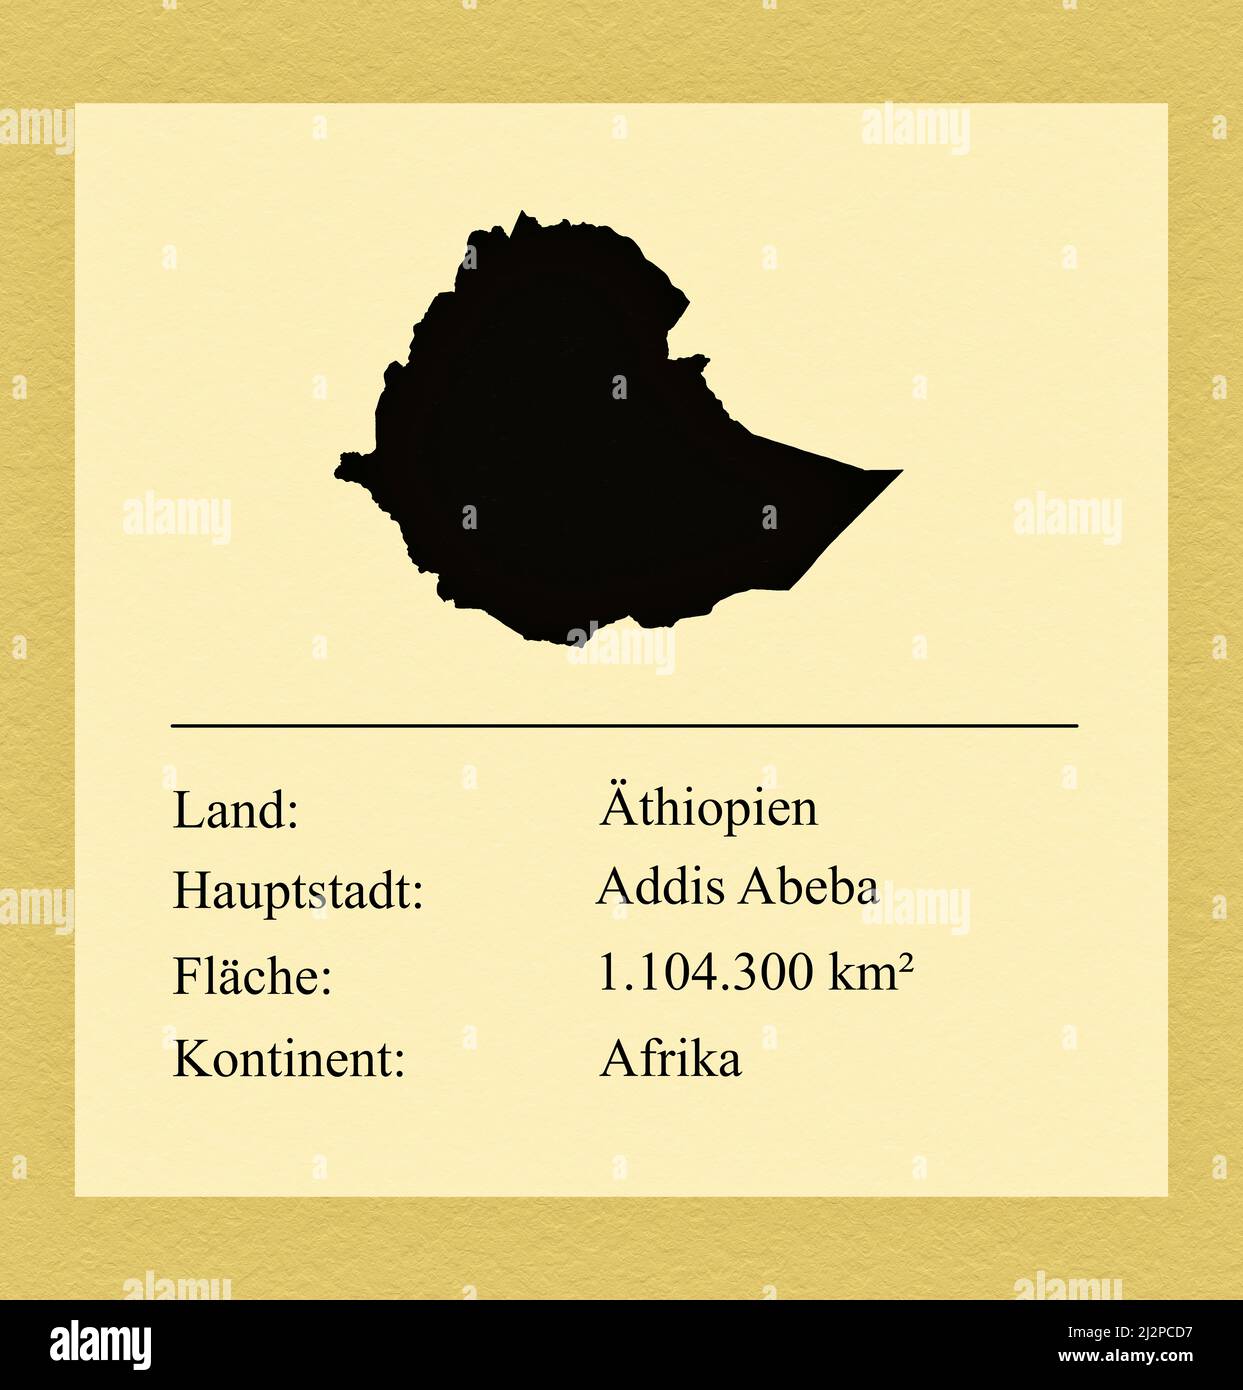 Umrisse des Landes Äthiopien, darunter ein kleiner Steckbrief mit Ländernamen, Hauptstadt, Fläche und Kontinent Stock Photo